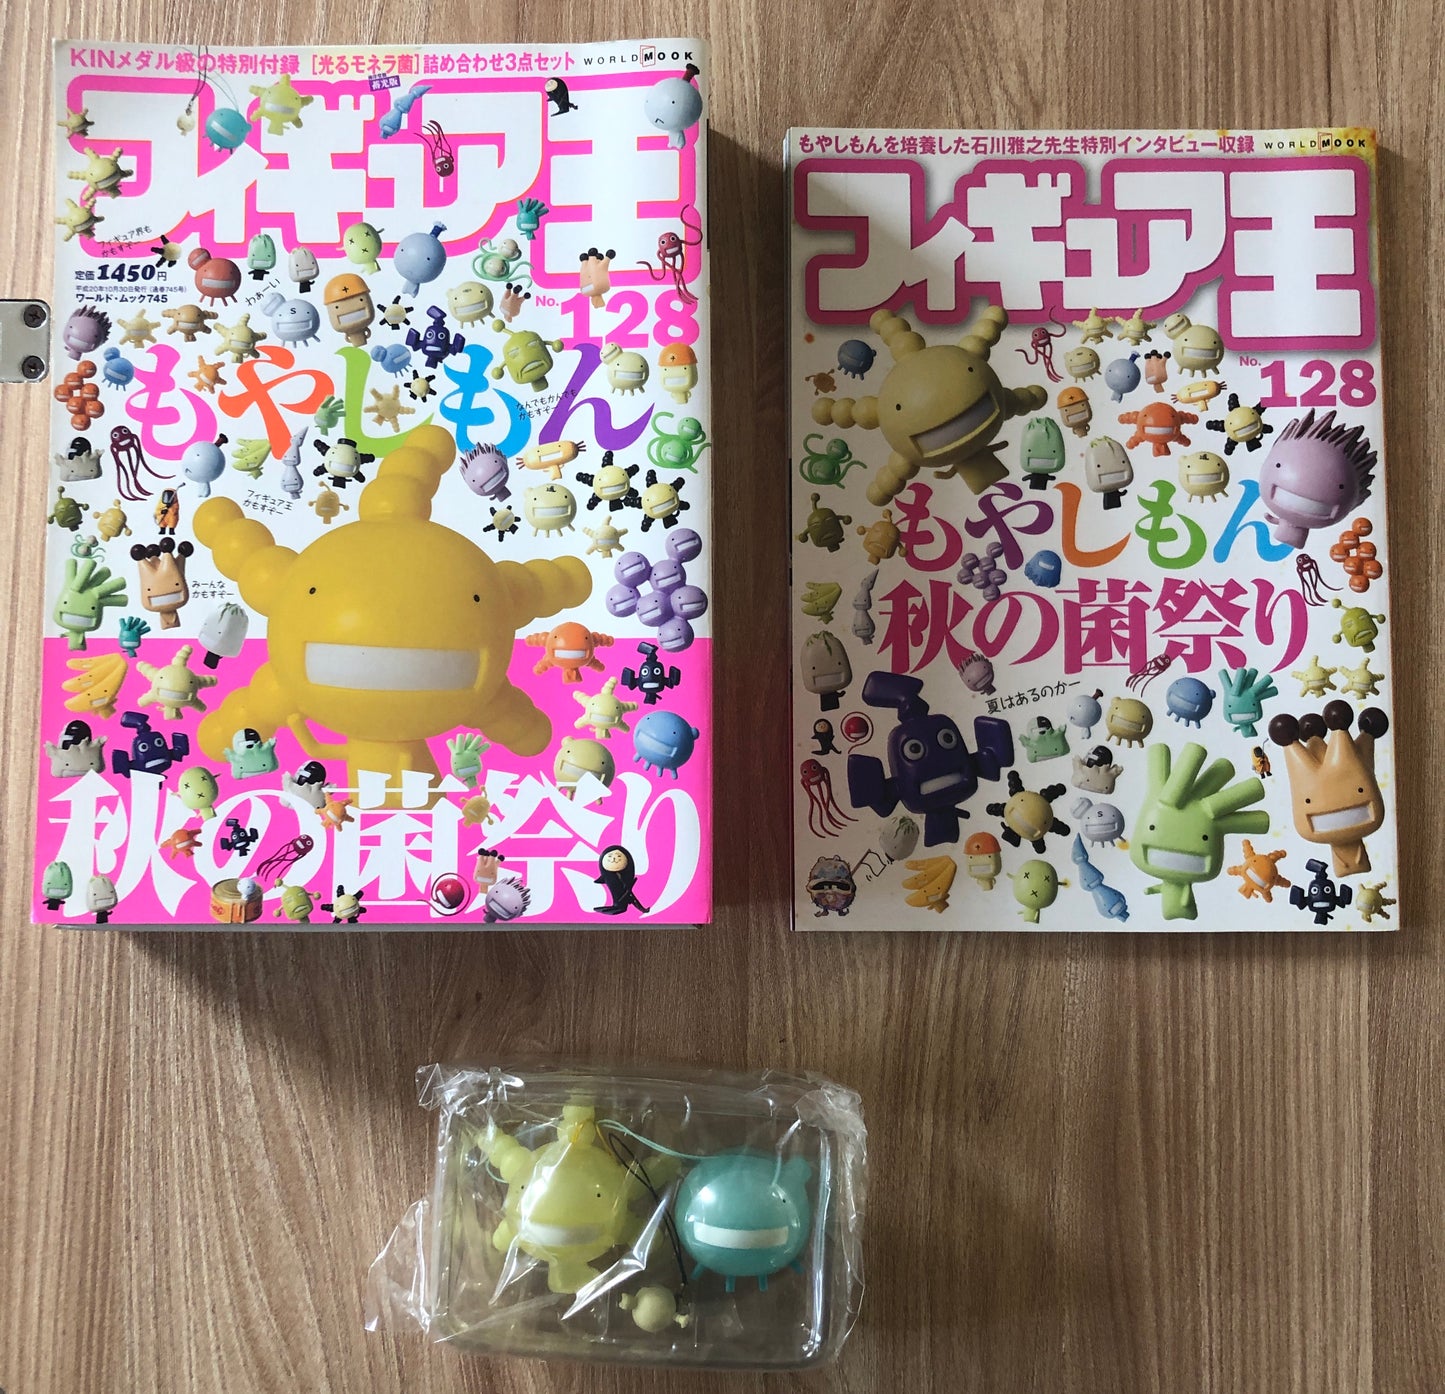 Magazine de figurines japonais FIGURE KING avec 2 figurines de Moyasimon 5/6 cm